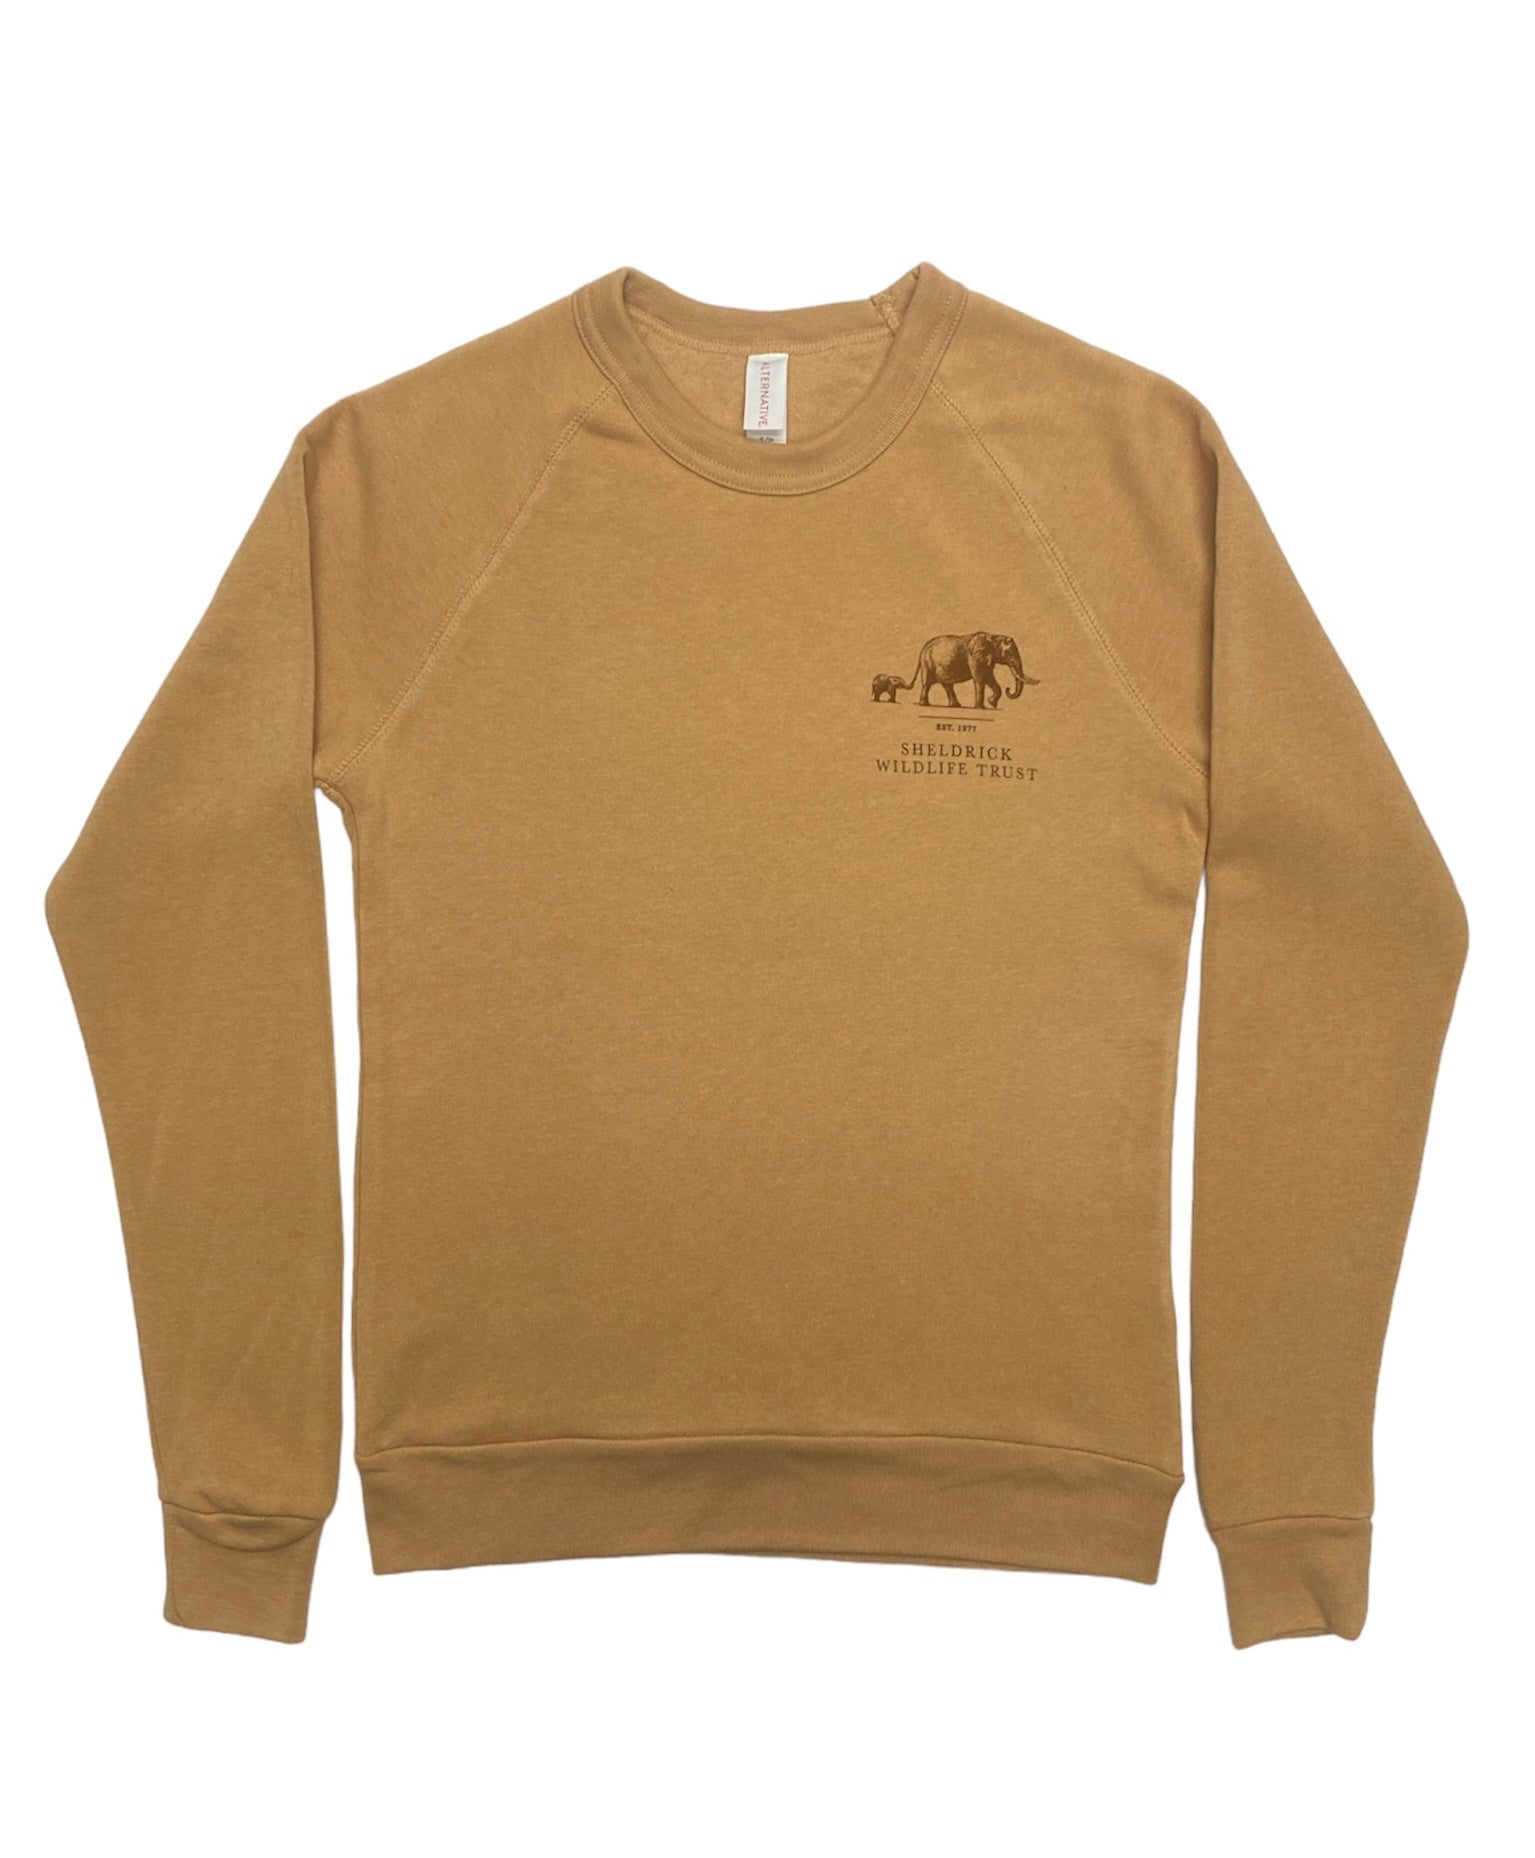 Camel Eco Fleece Crewneck Sweatshirt